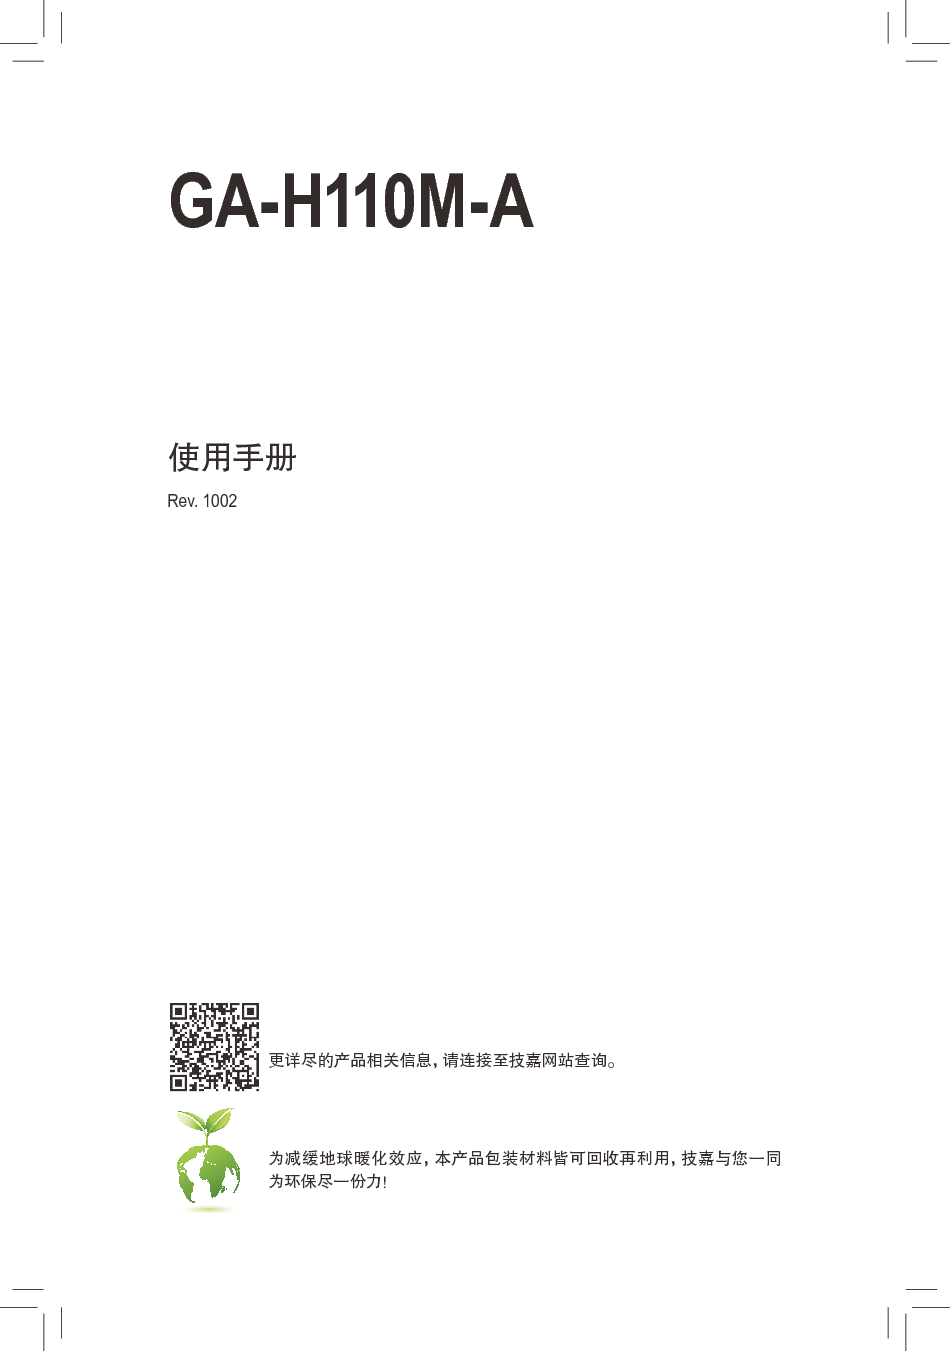 技嘉 Gigabyte GA-H110M-A 使用手册 封面